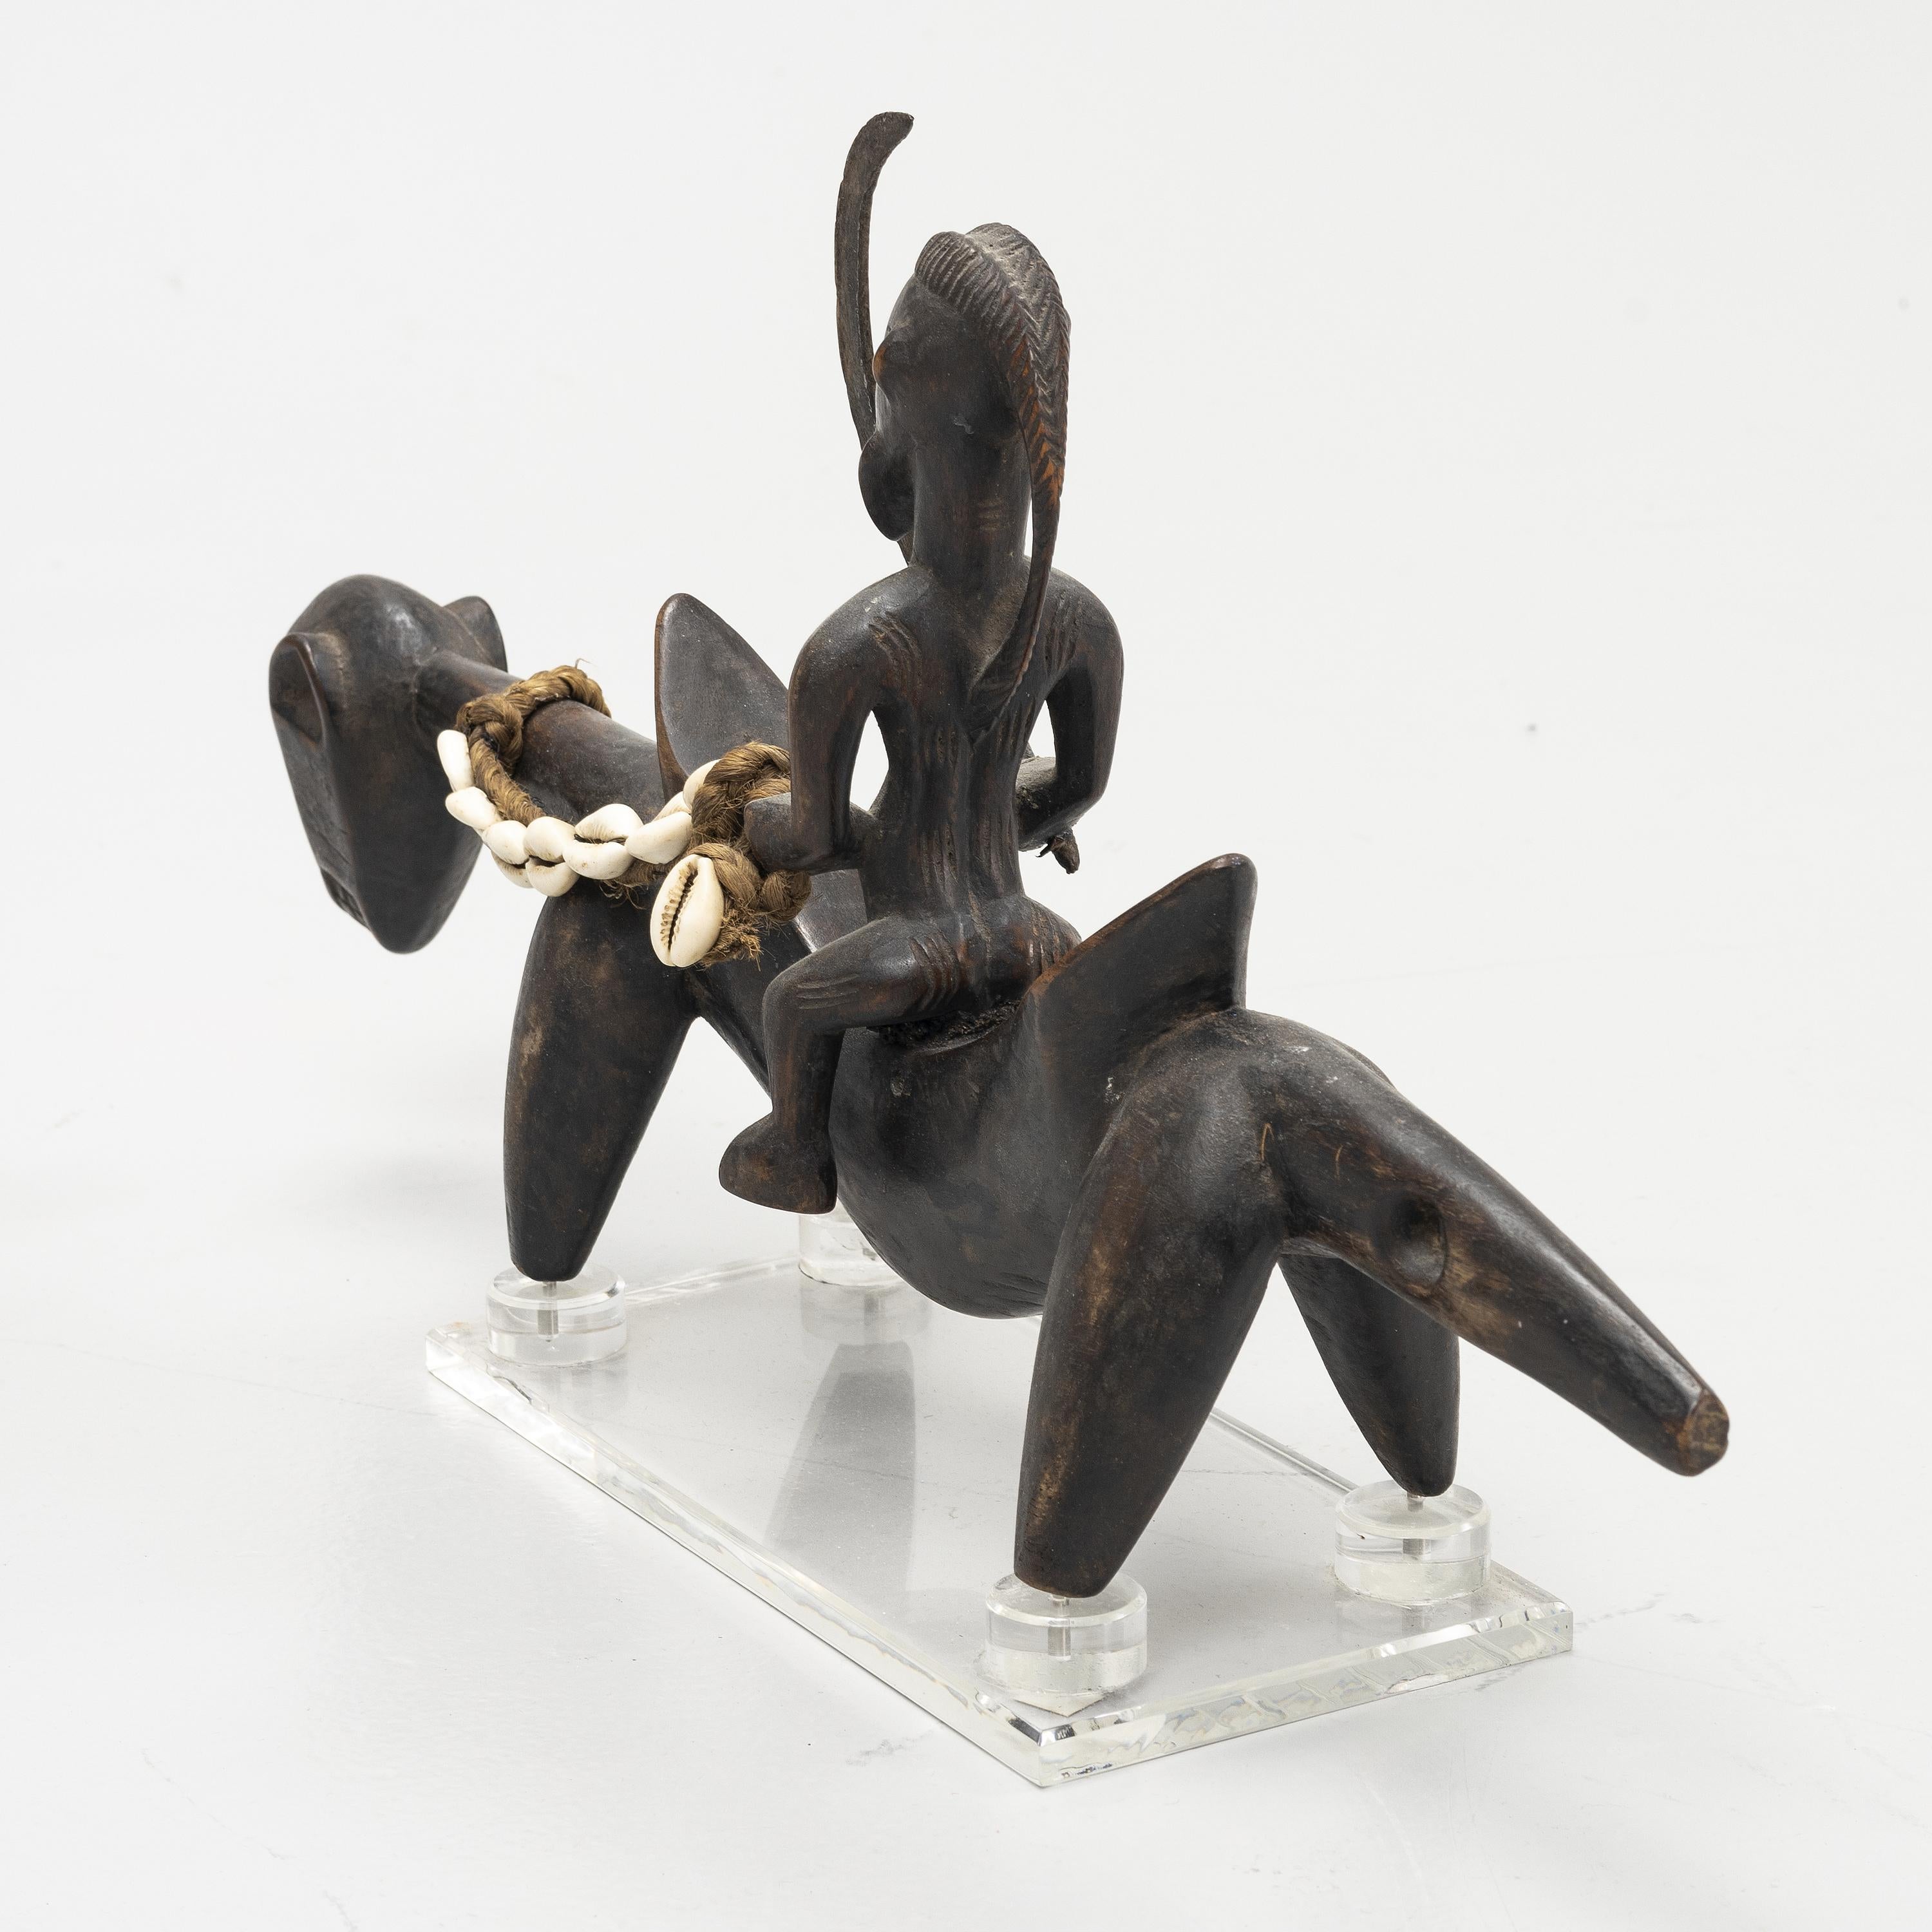 Statue d'un cavalier sur sa monture parmi la tribu des Senufo installée dans le nord de la Côte d'Ivoire. Sculptée dans un bois dense. Belle patine. La statue est dotée d'une base en acrylique fabriquée sur mesure.
Provenance : Collection privée